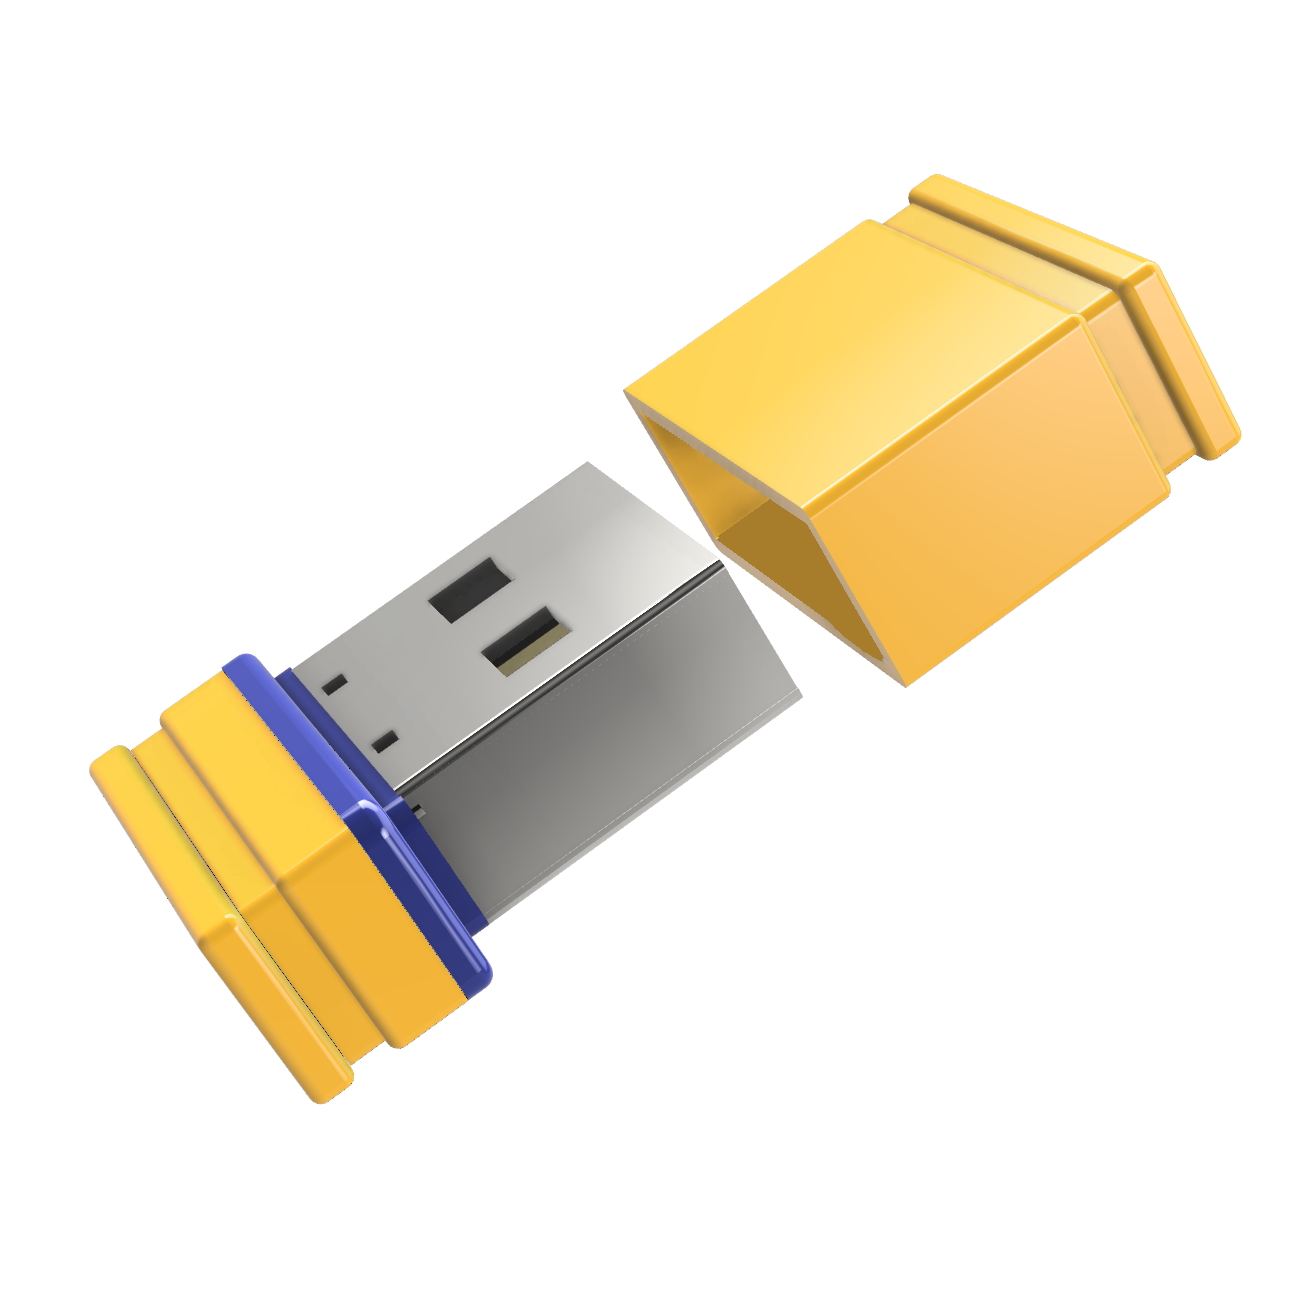 4 USB-Stick GERMANY USB P1 Mini GB) ®ULTRA (Gelb/Blau,